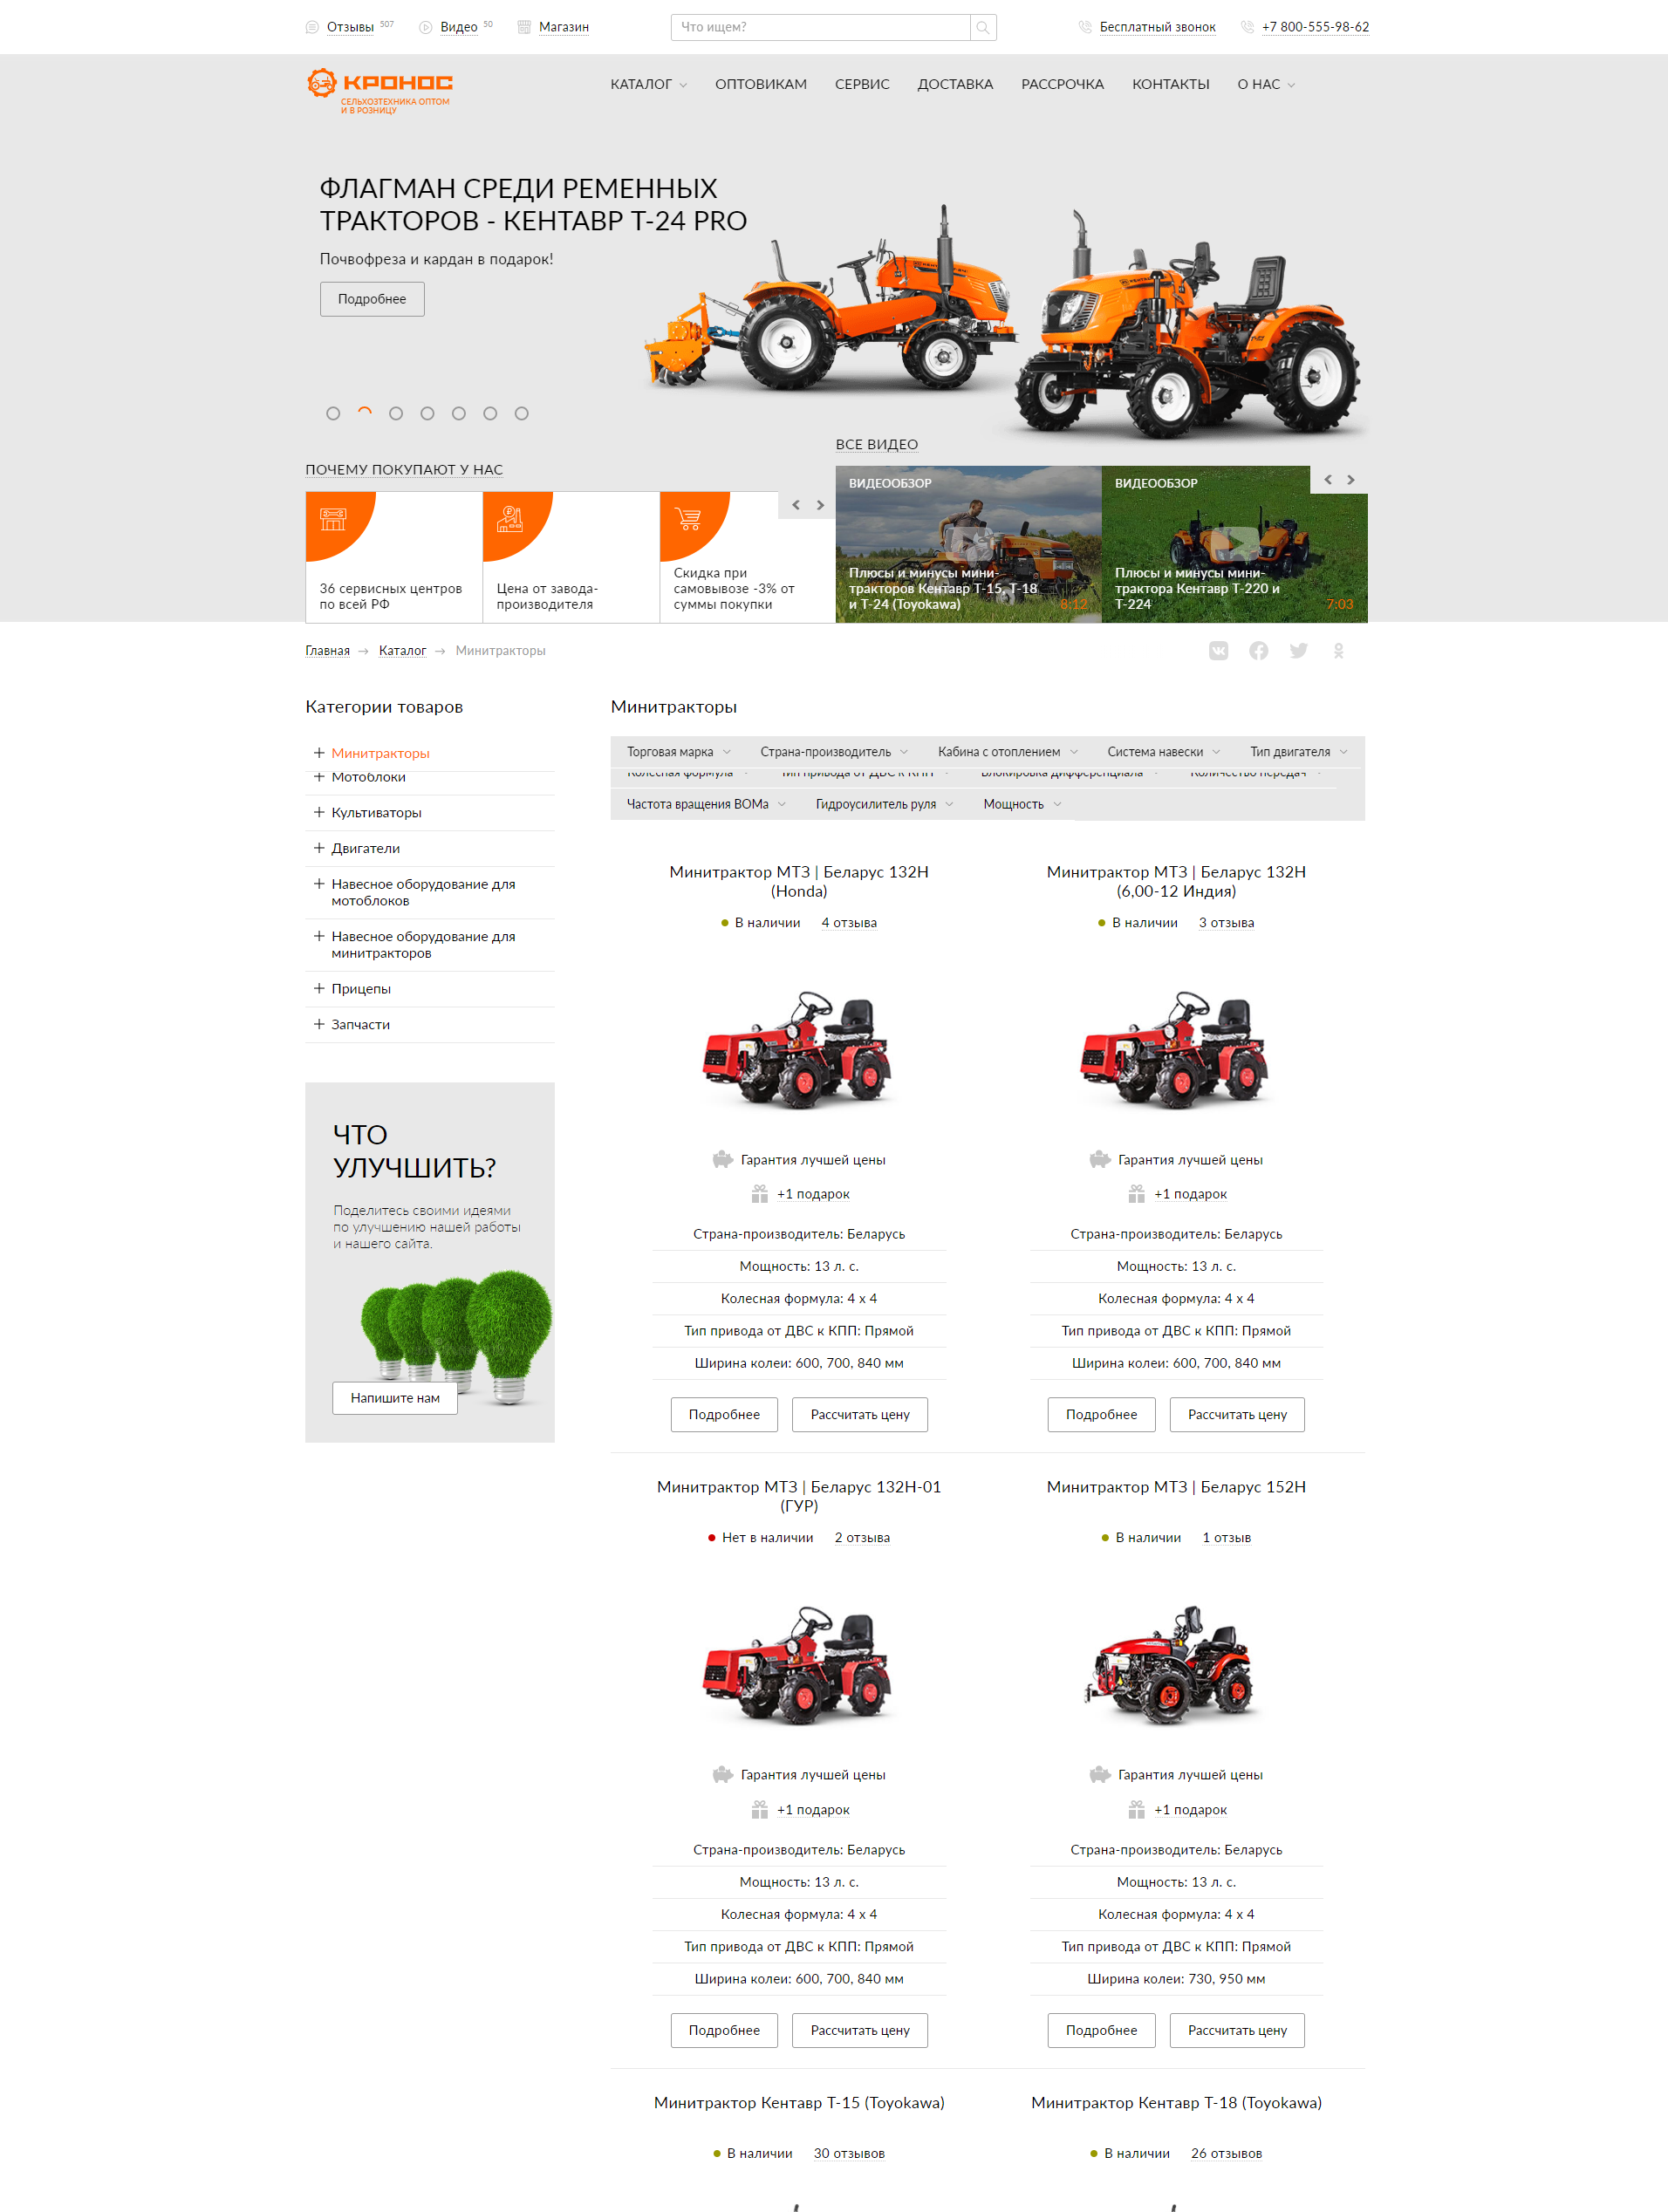 разработка сайта для компании "кронос" - продавца сельскохозяйственной техники